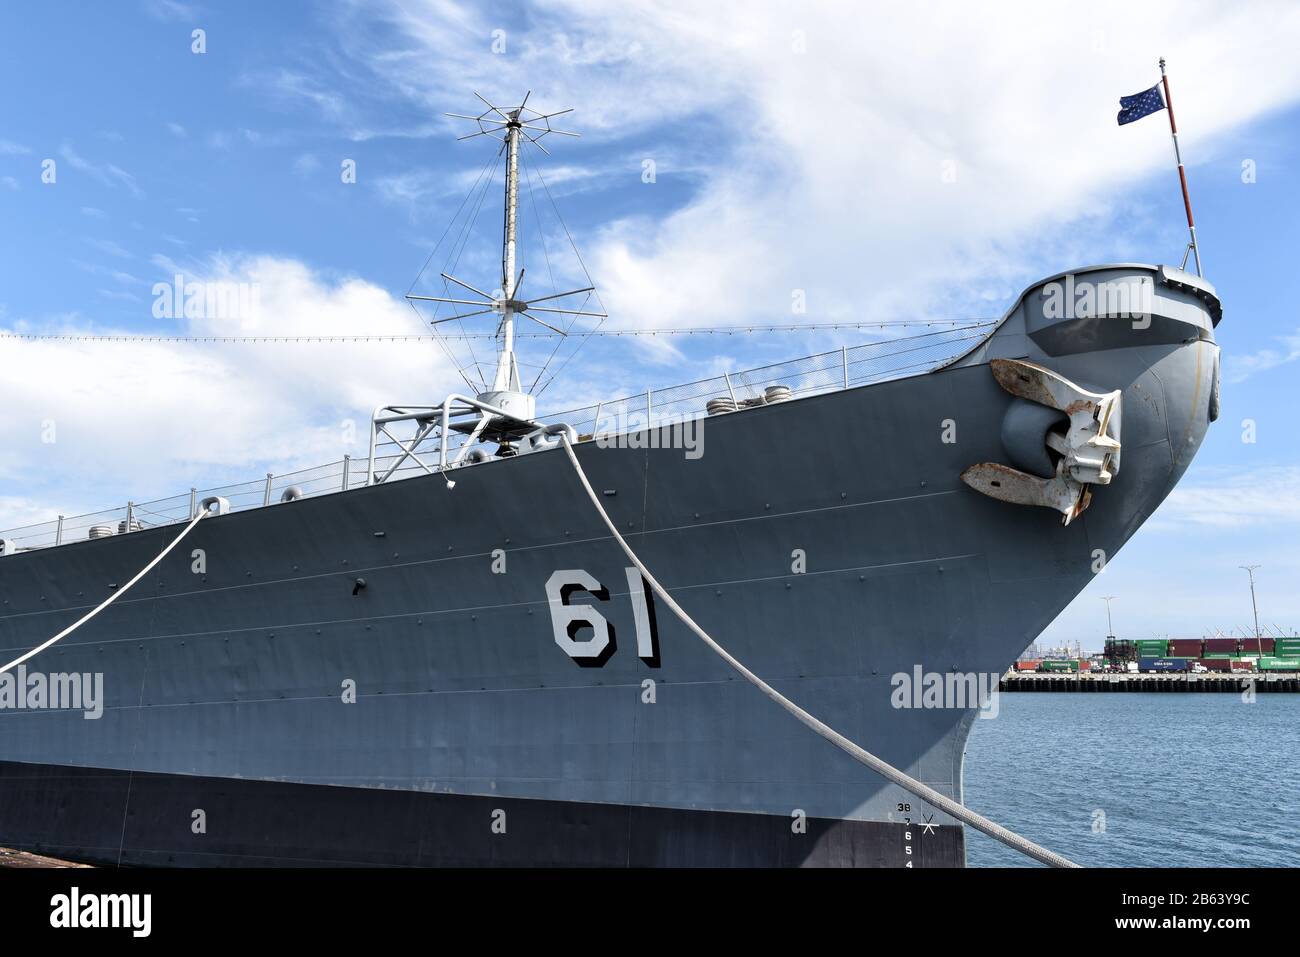 Los ANGELES, KALIFORNIEN - 06 MAR 2020: Der Bogen von BB-61, die USS Iowa, ein pensionierter Marine-Kriegsschiff, der jetzt ein Maritime Museum ist. Stockfoto